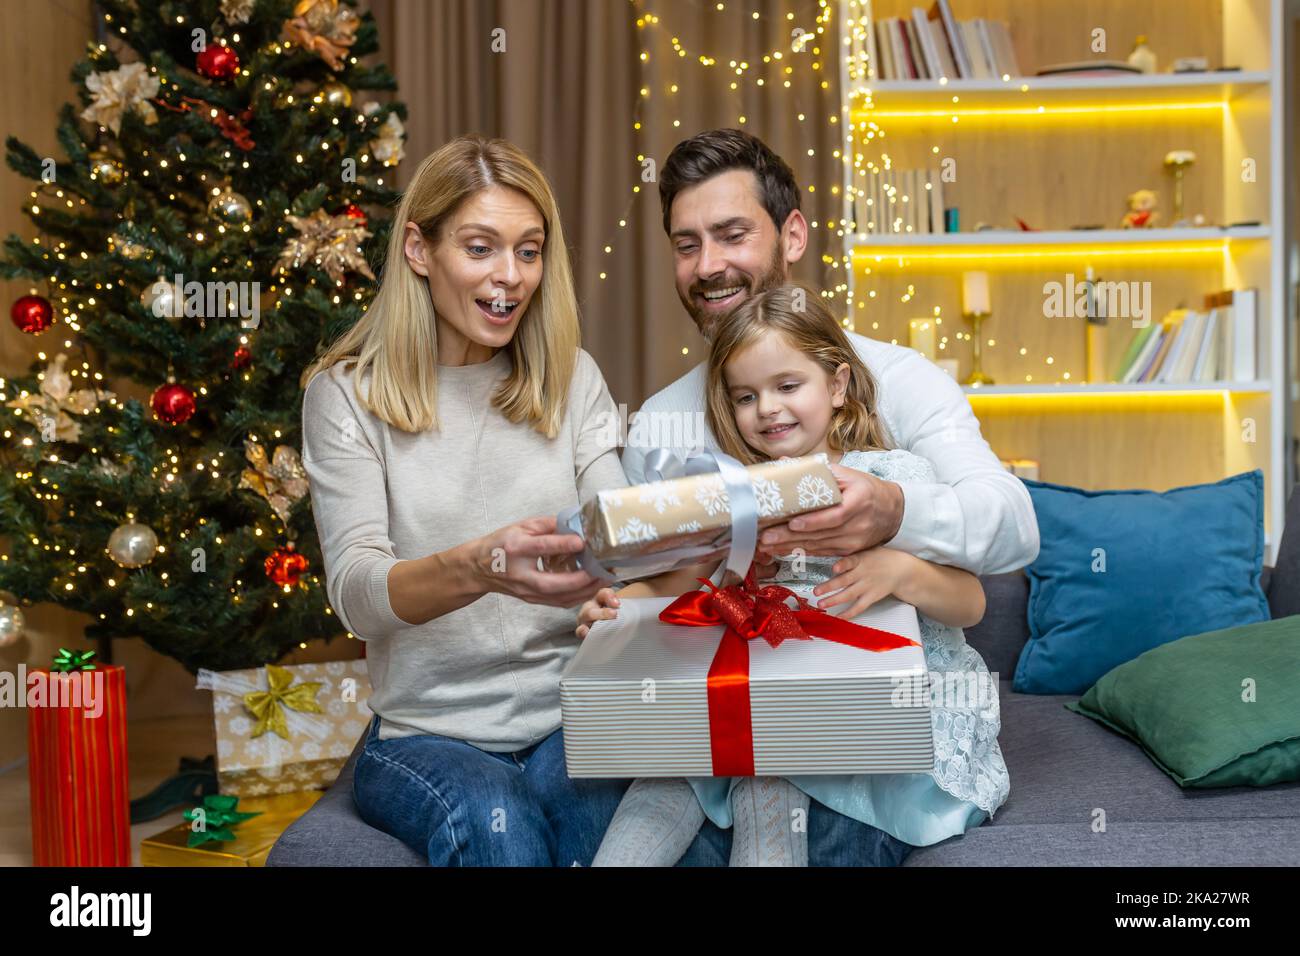 Portrait de fête d'une jeune famille heureuse près de l'arbre de Noël à la maison. Maman, papa et petite fille sont assis sur le canapé et échangent des cadeaux, en se donnant joyeusement les autres boîtes avec des surprises. Banque D'Images